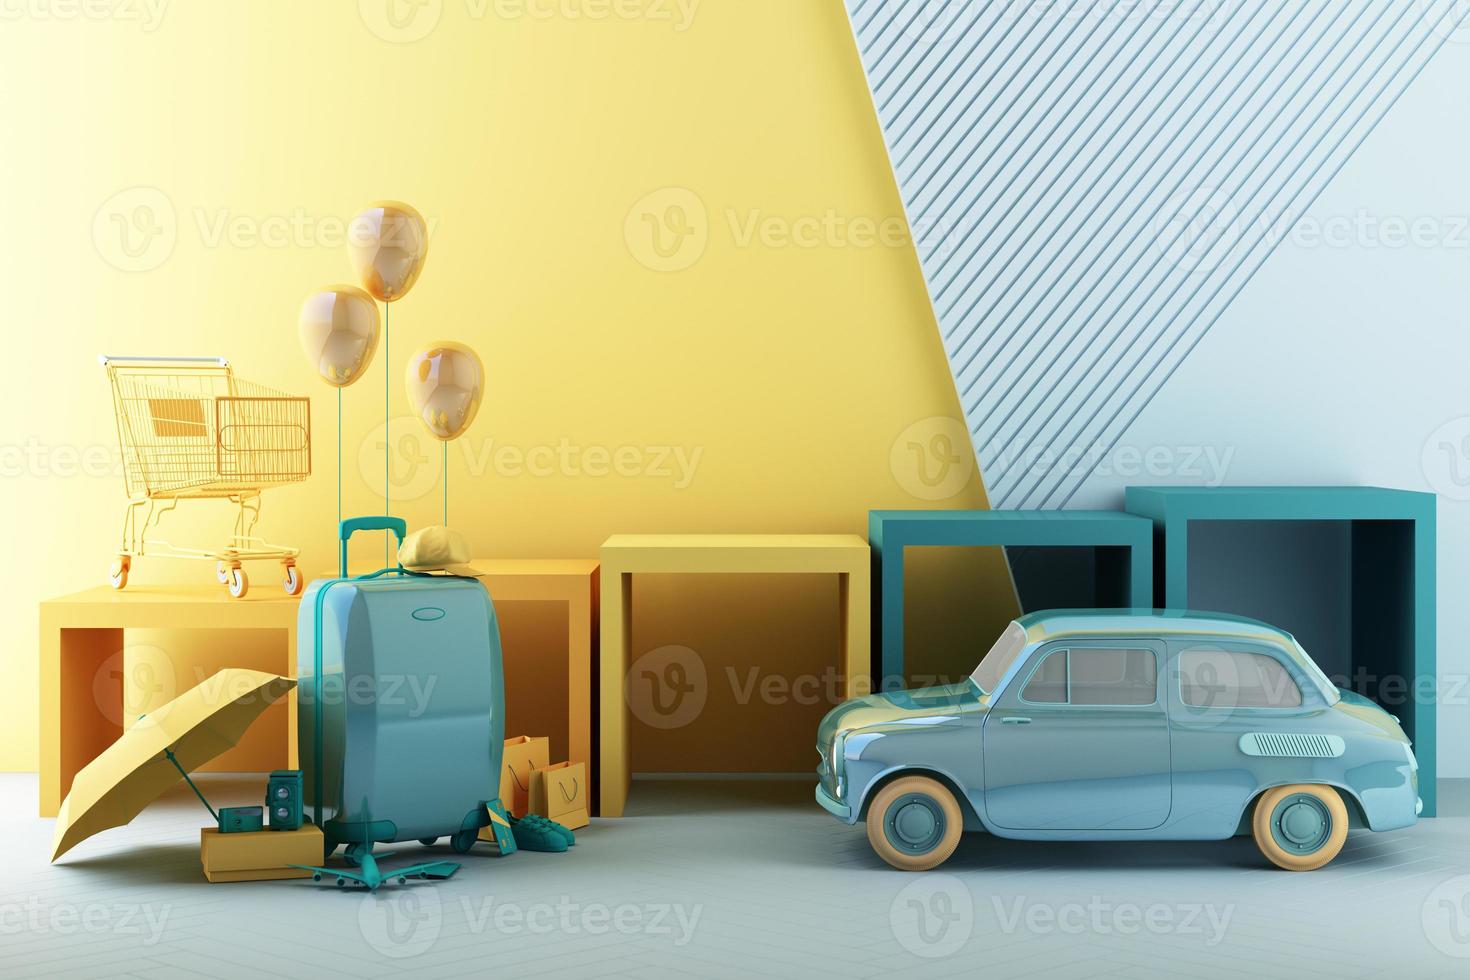 concepto de compras de verano con equipaje rodeado de sombrillas, zapatos y cámaras junto con modelos de aviones y ropa en perchas formas geométricas de moda con stand de productos 3d renderizado foto